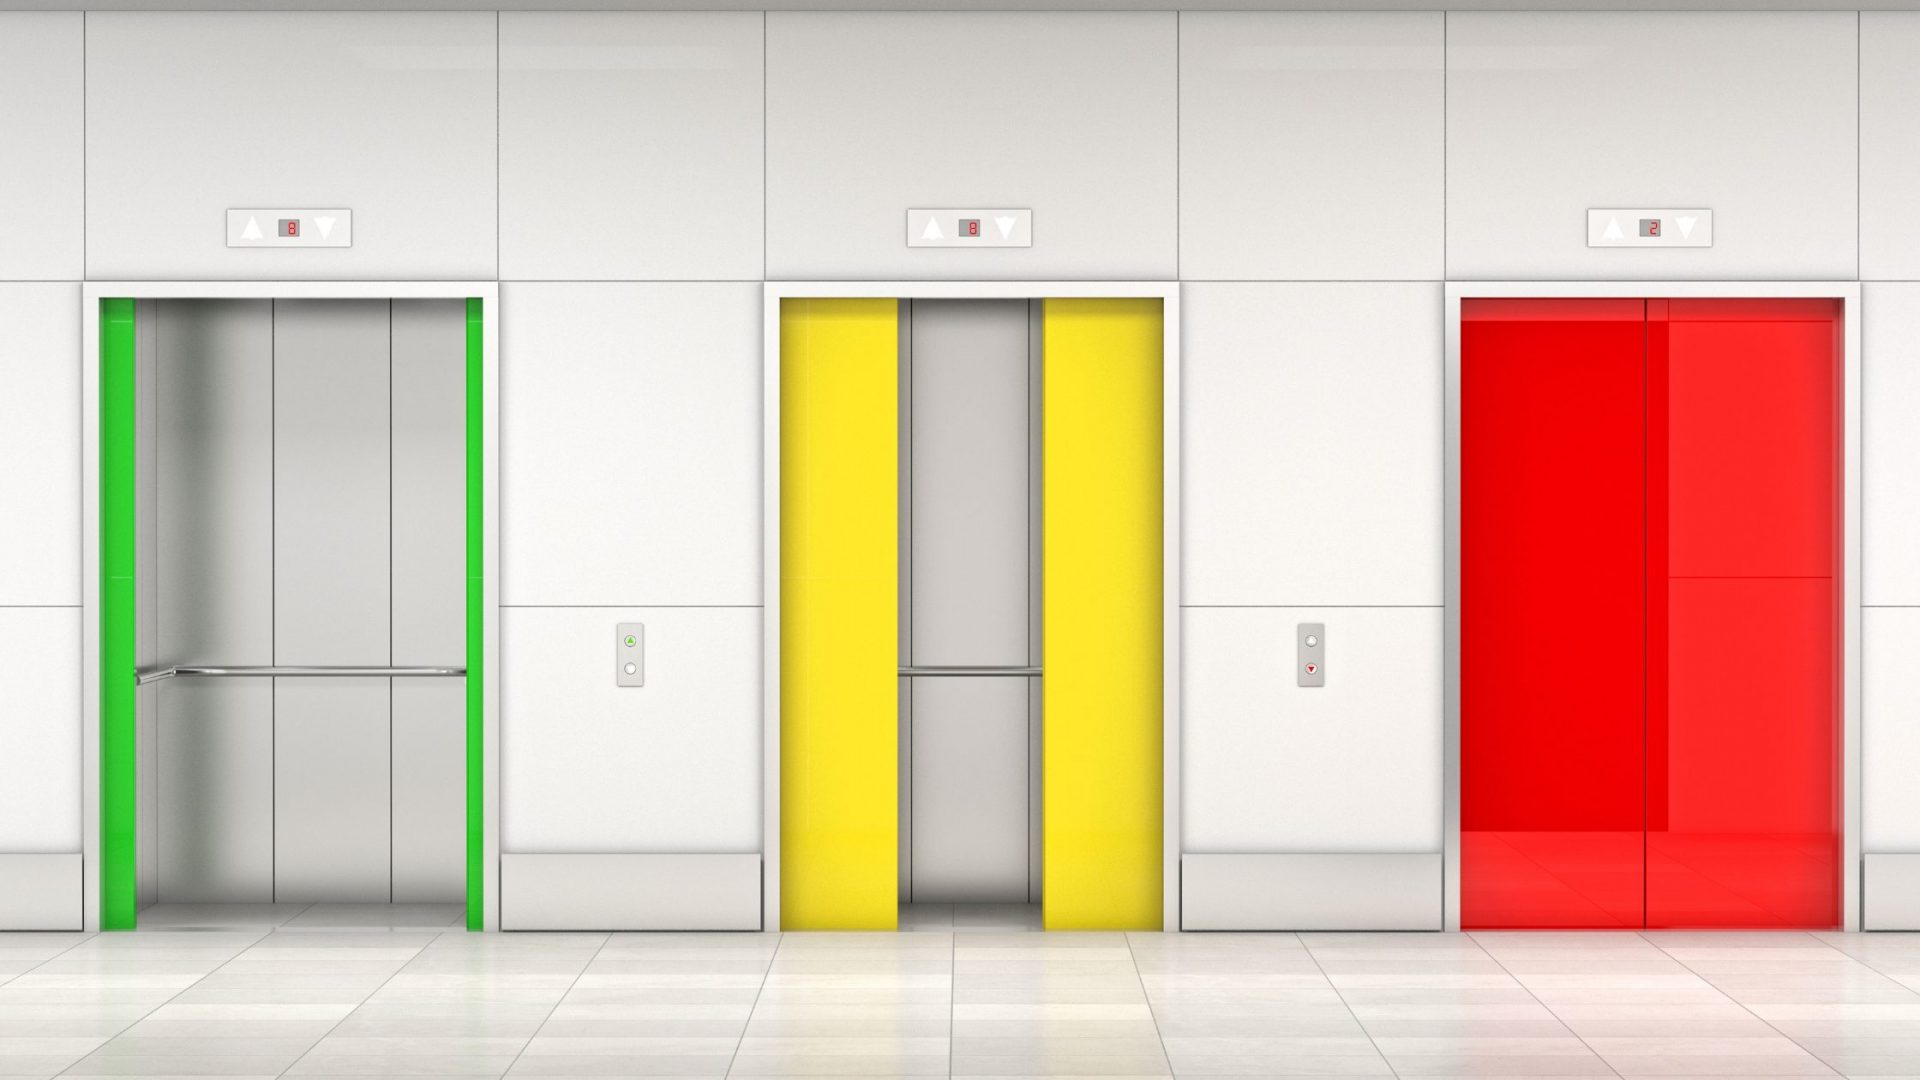 Three elevators with coloured doors - an open green door, a half open yellow door and a closed red door